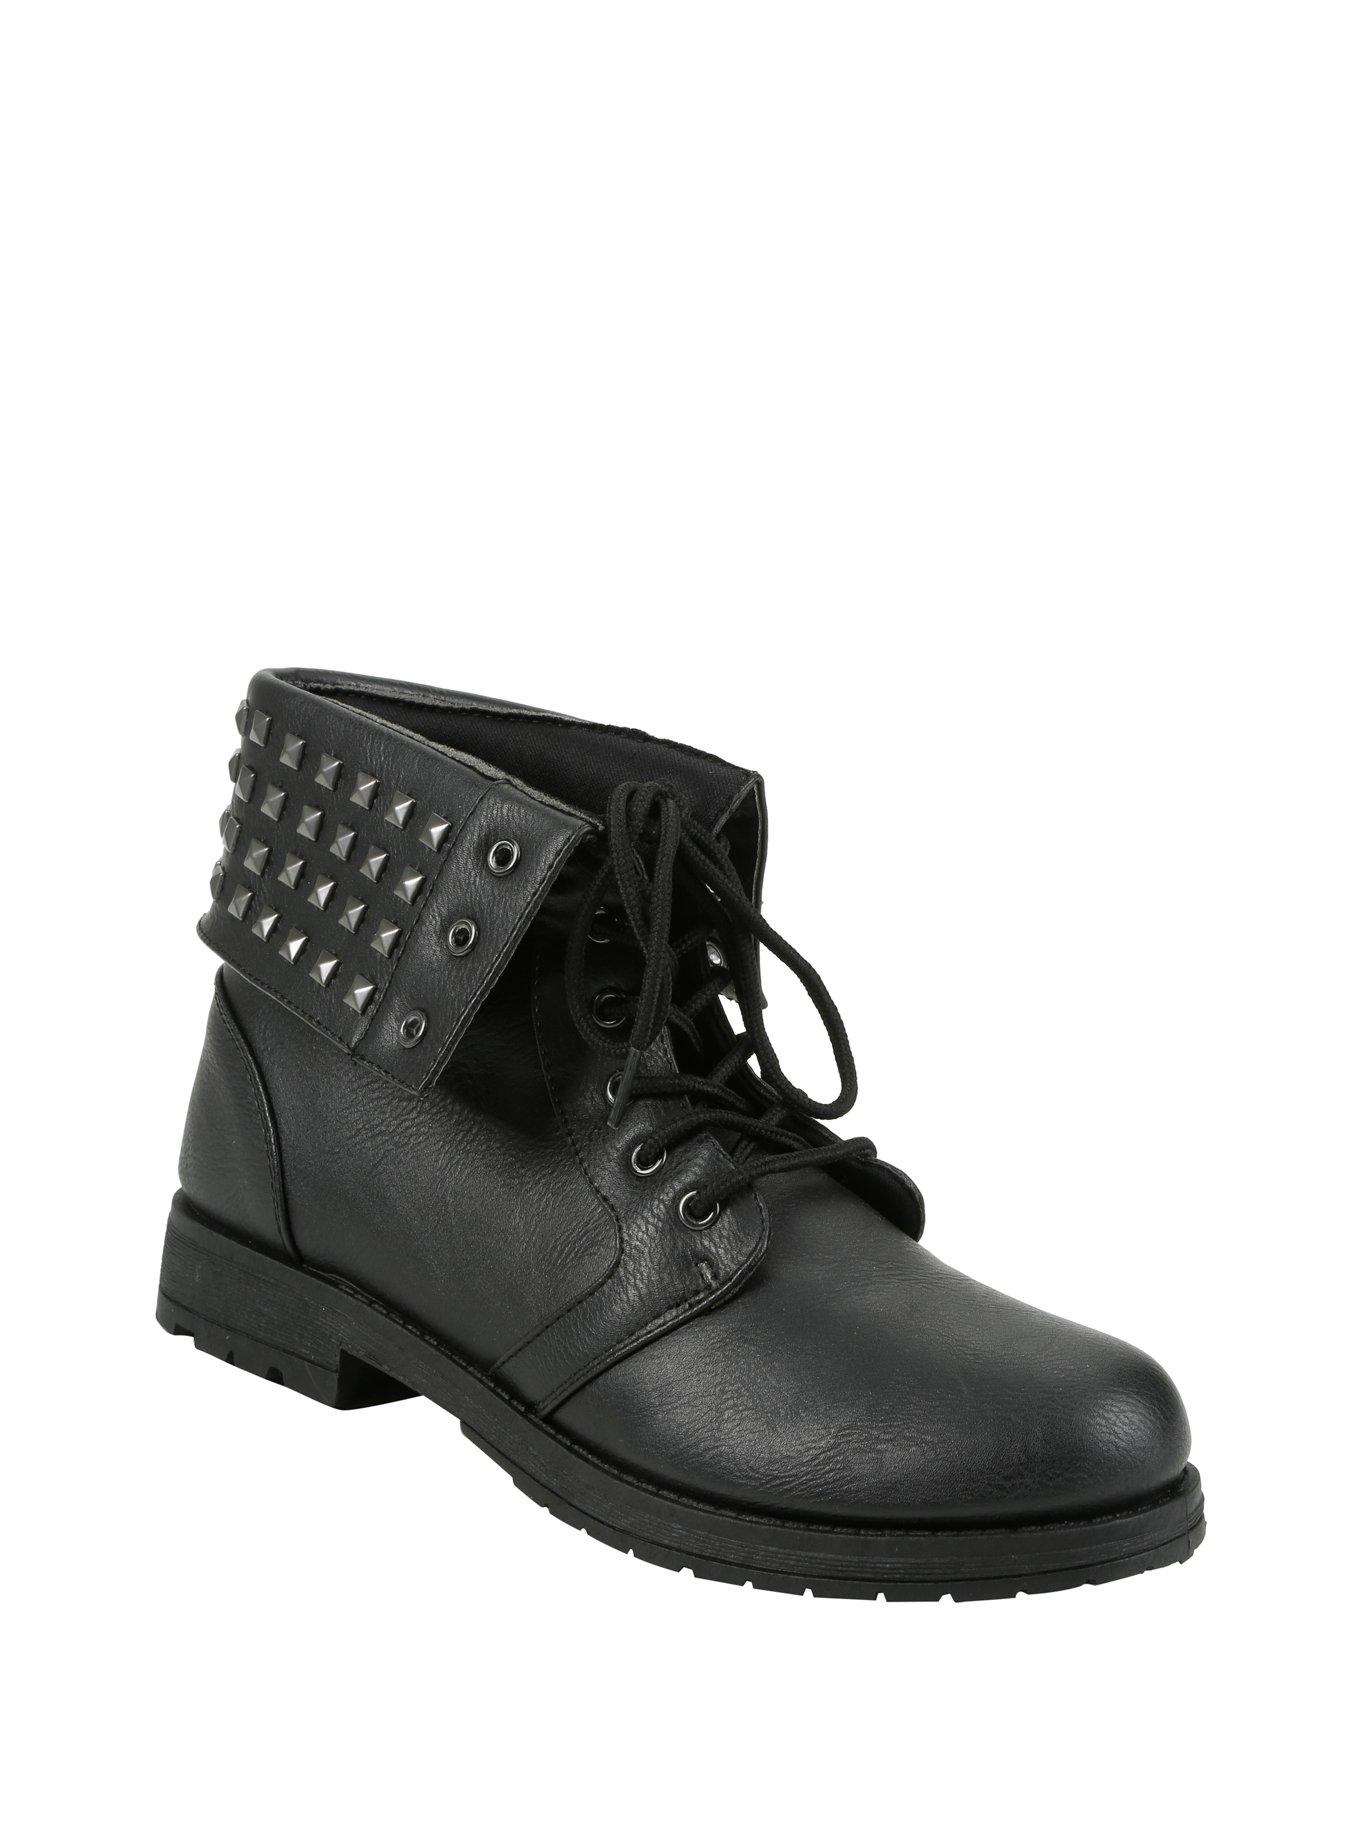 Black Studded Fold-Over Ankle Boots, BLACK, hi-res